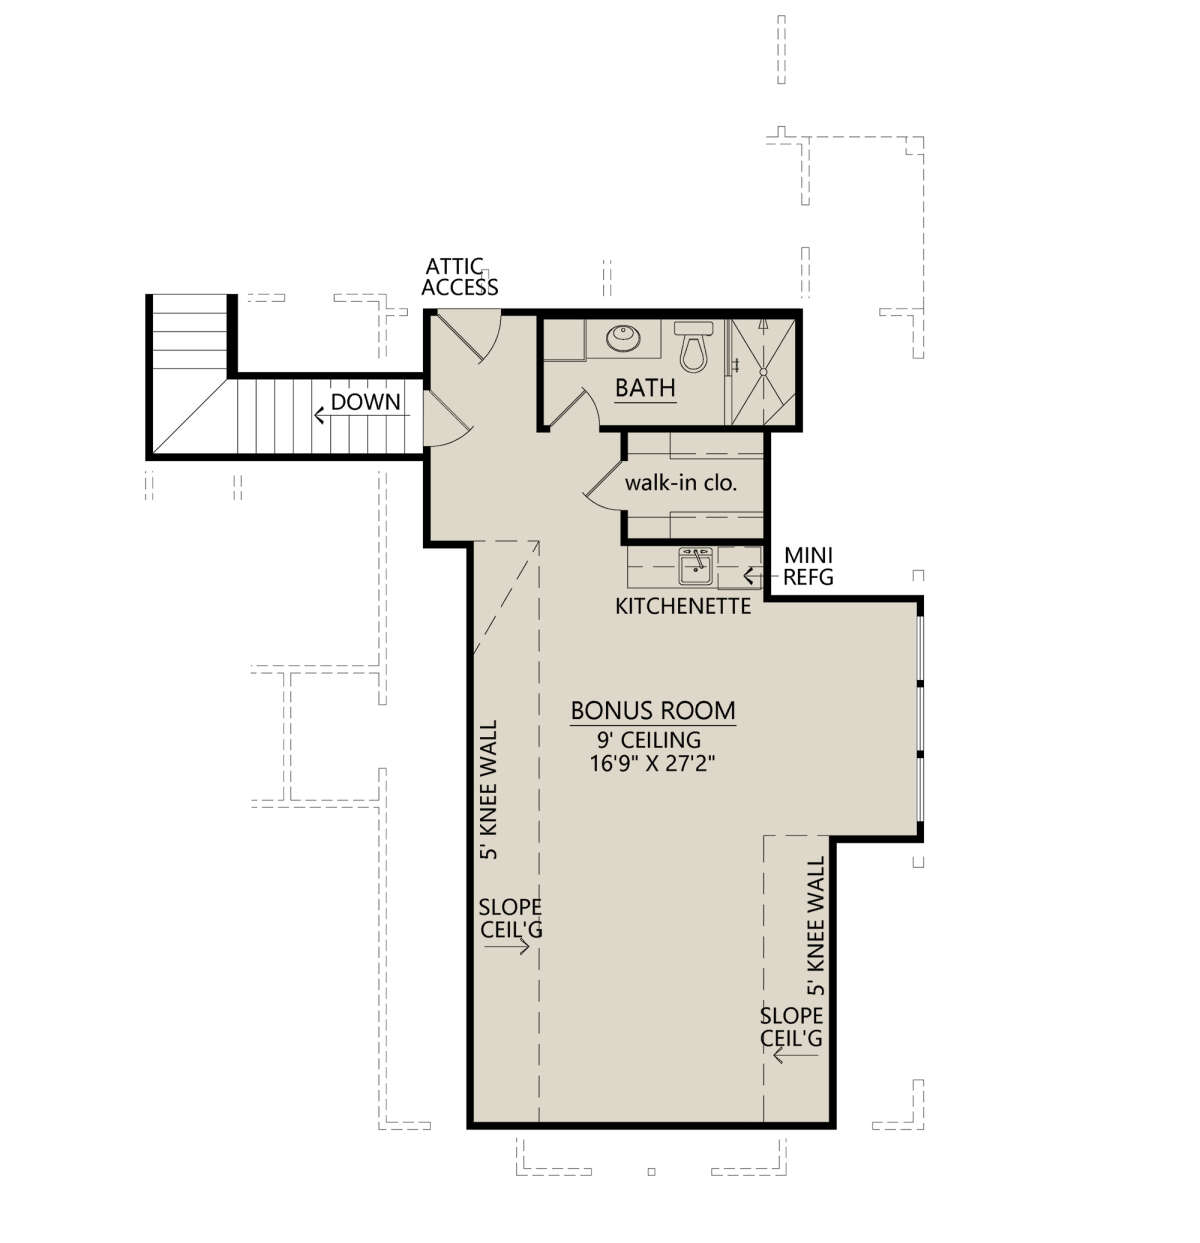 Bonus Room for House Plan #4534-00092